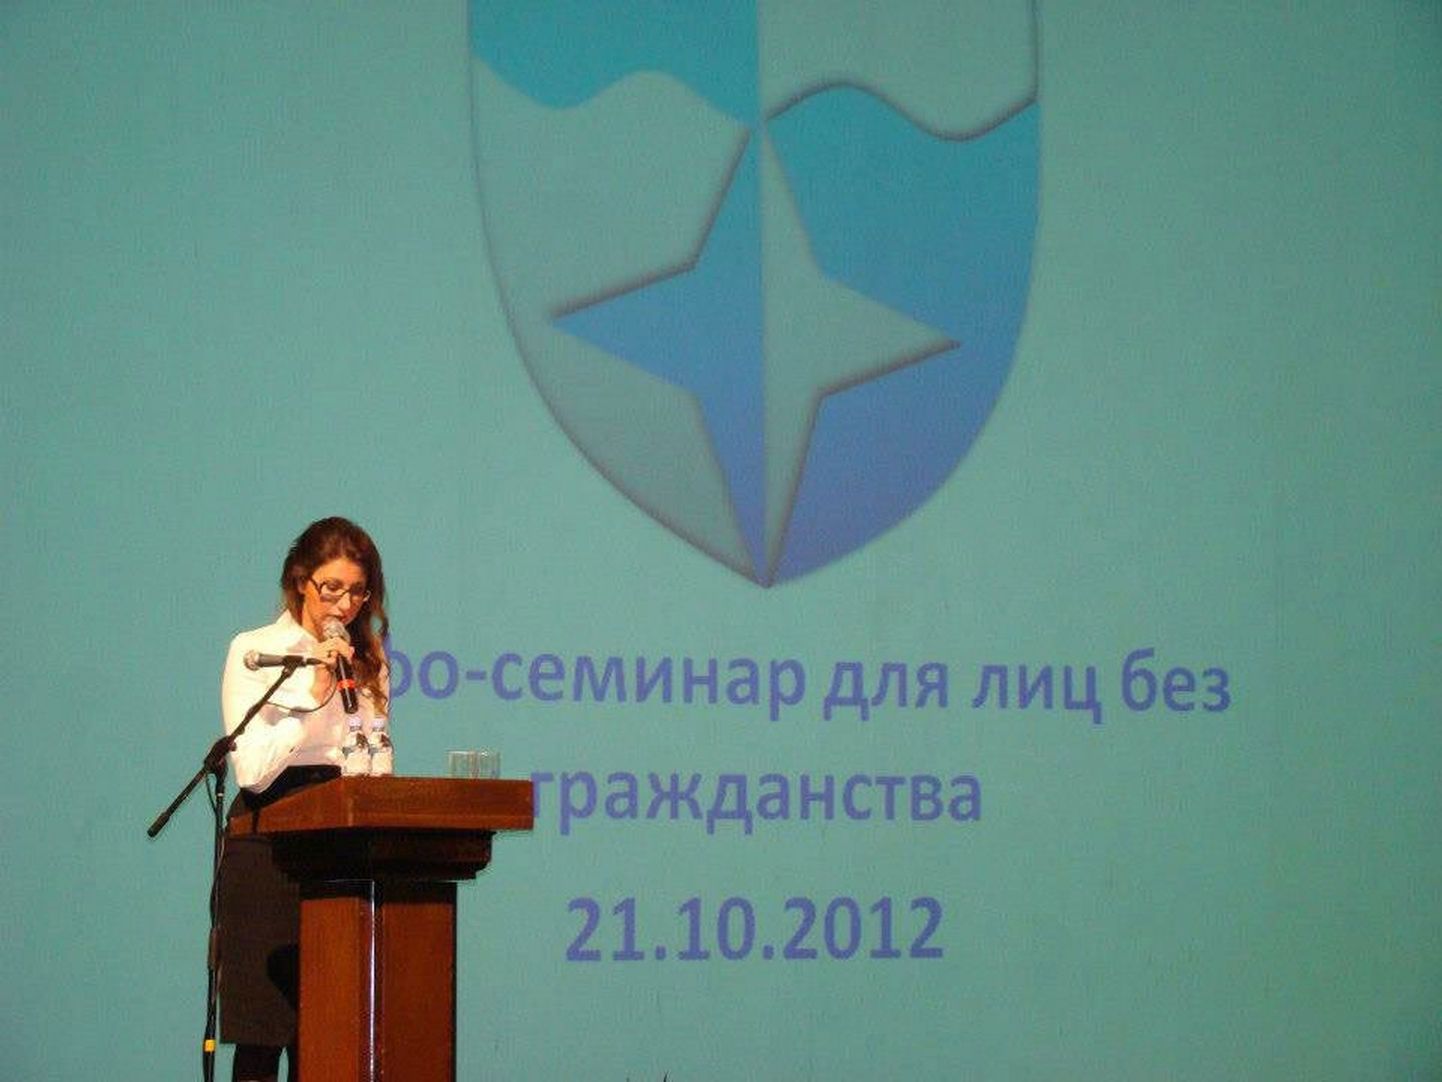 Старейшина Ласнамяэ Ольга Иванова сообщила владельцам «серых паспортов» о поддержке управы в их желании стать гражданами ЭР.